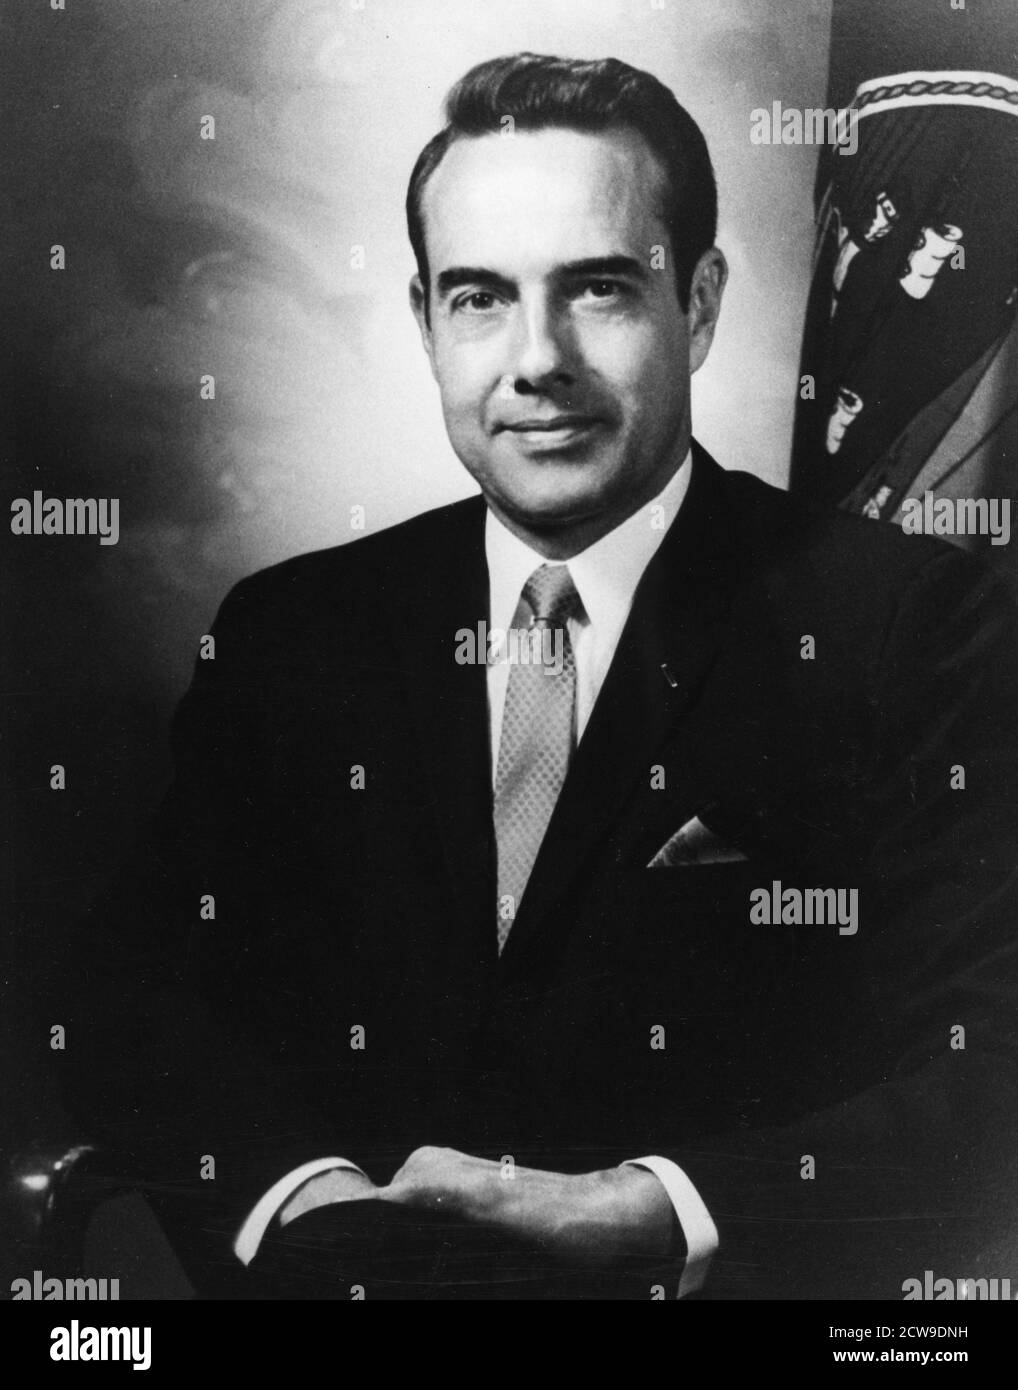 Retrato oficial del Senador Robert J Dole de Kansas, Washington, DC, 1973. (Foto de la Oficina del Senador Dole/Agencia de Información de los Estados Unidos/Imágenes de la Vintage de la RBM) Foto de stock